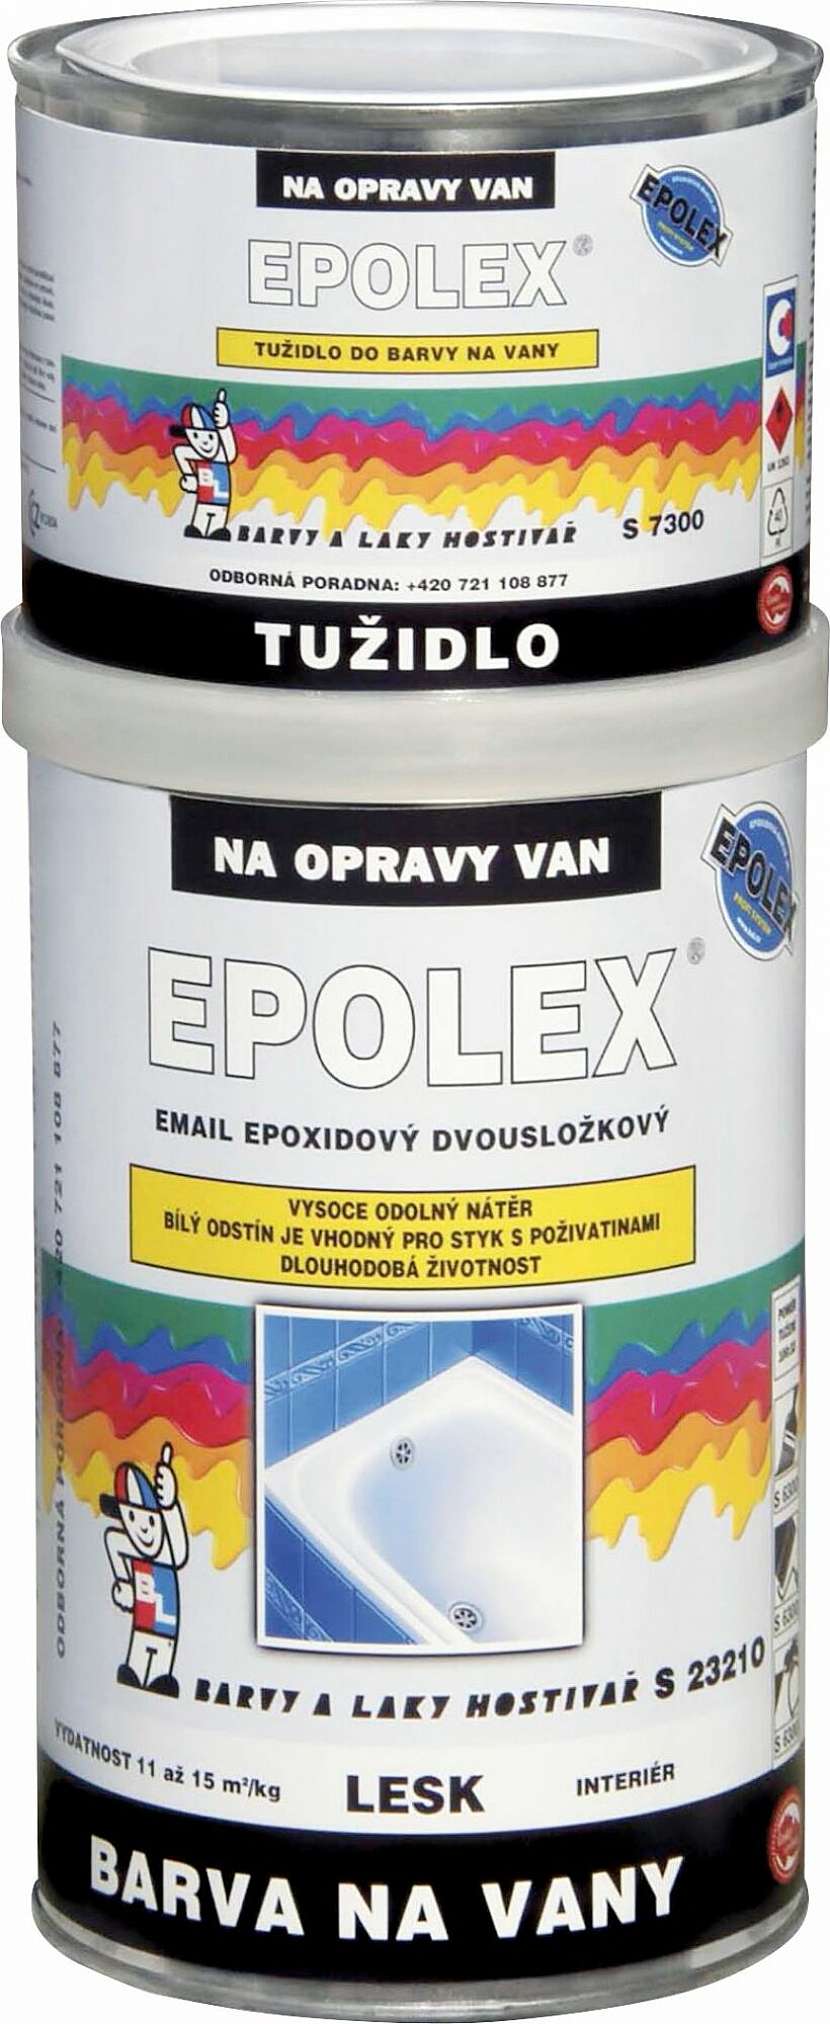 Barvou na vany Epolex lze snadno nahradit materiál, který byl na vanu nanášen původně.